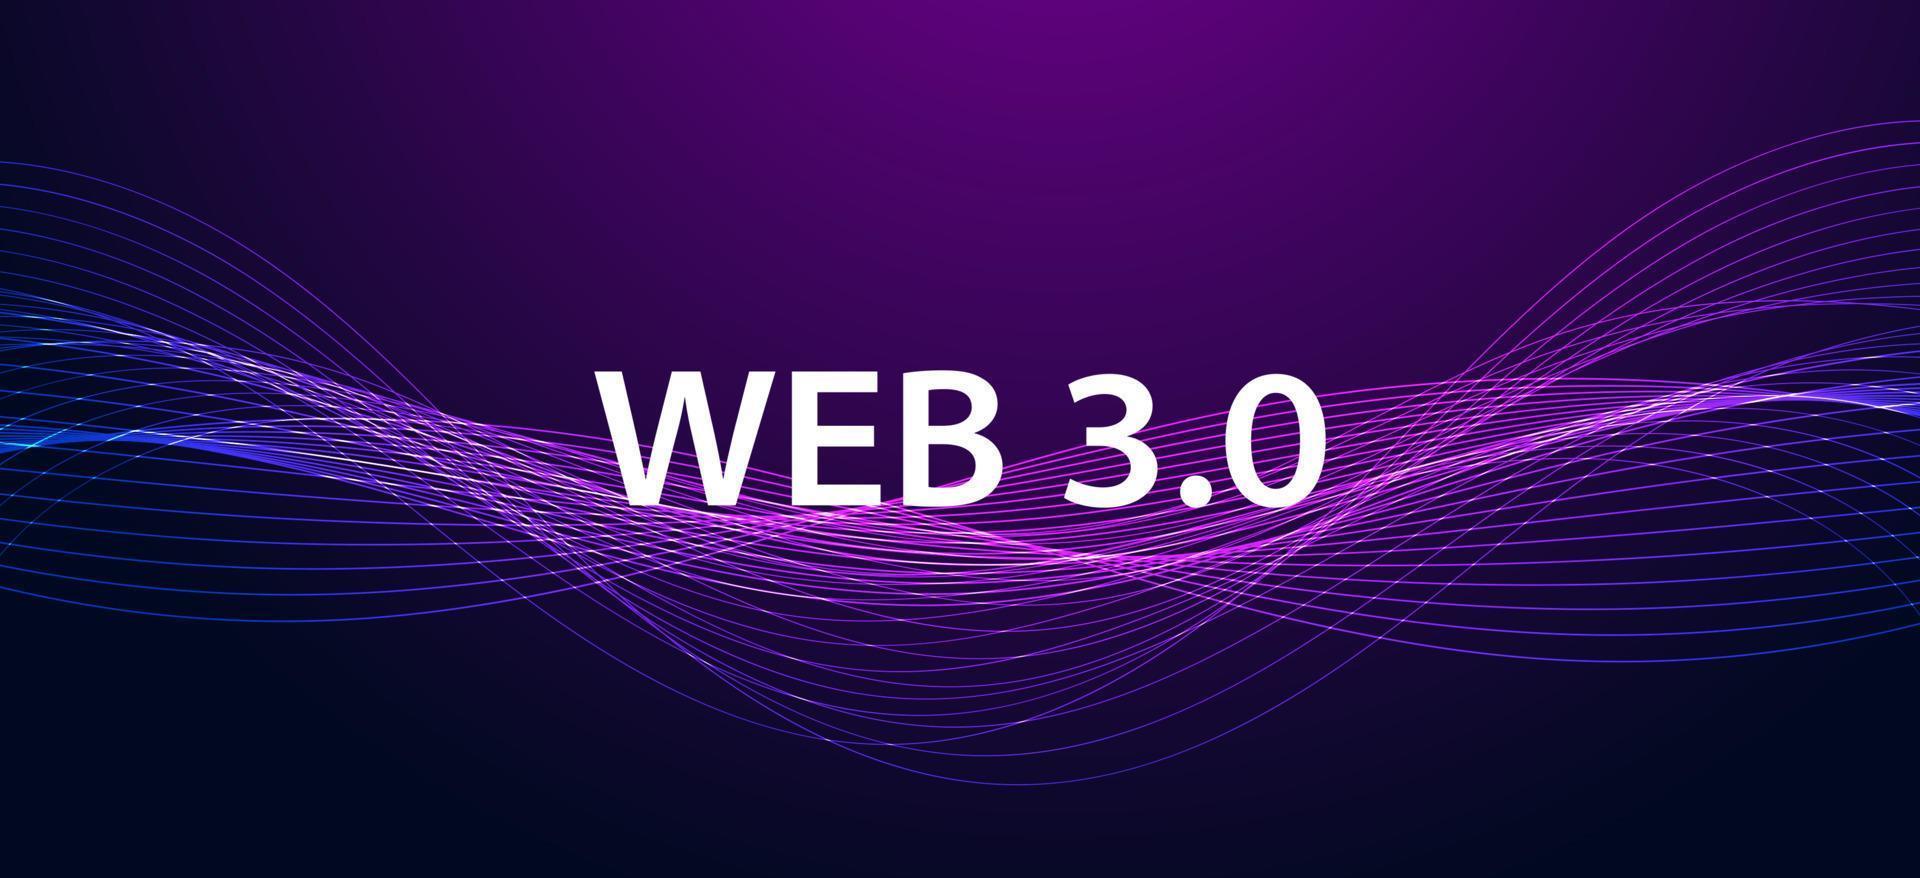 abstrakt Vinka teknologi lila modern webb 3.0 begrepp är fri tillgång till information eller tjänster utan förmedlarna till kontrollera och censur. vektor